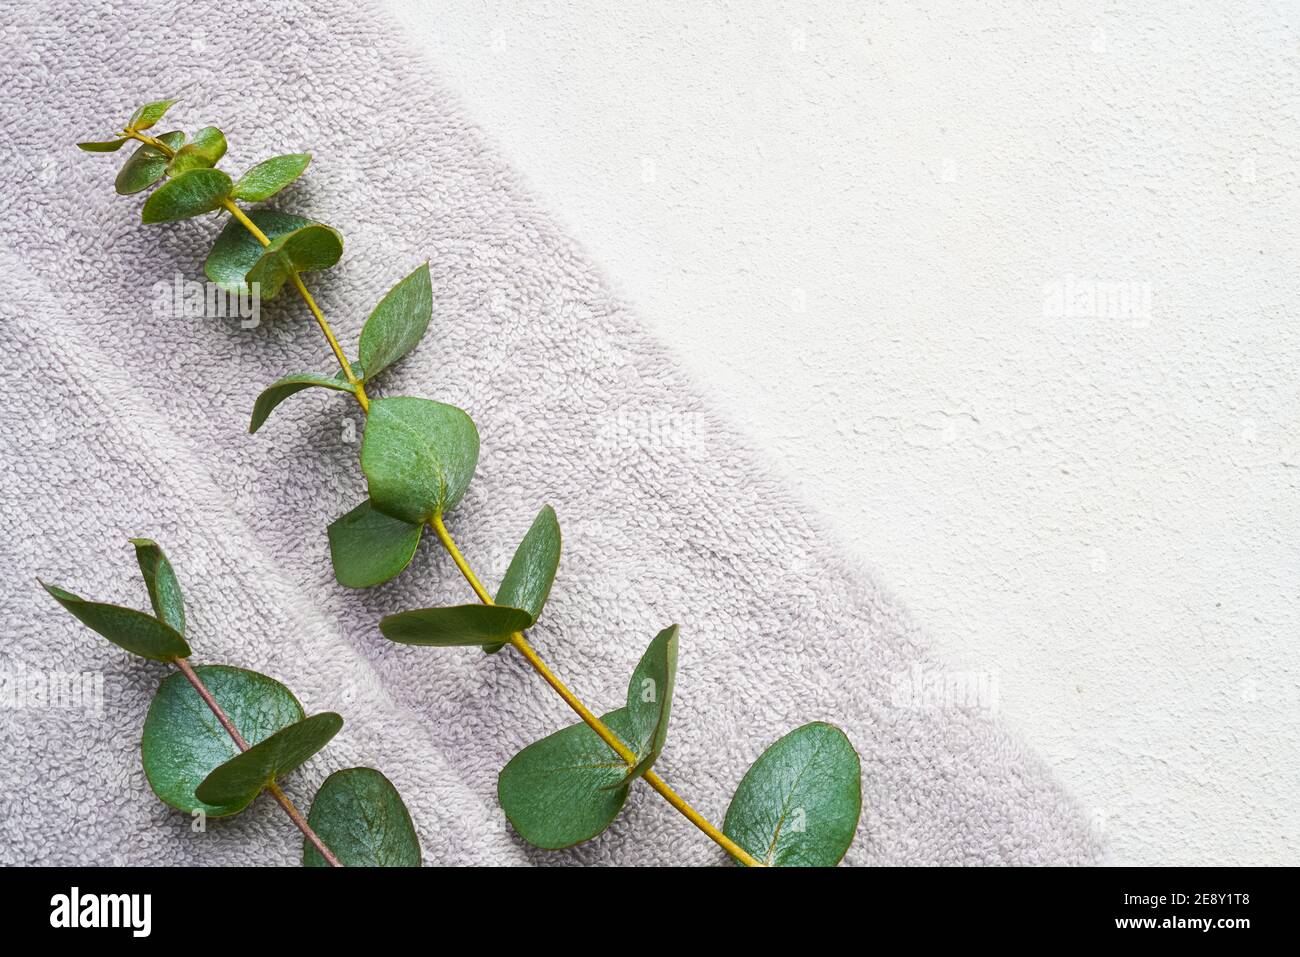 Serviette grise roulée et branche d'eucalyptus vert sur fond de béton blanc. Style scandinave minimaliste. Hygiène, bien-être, soins du corps con Banque D'Images